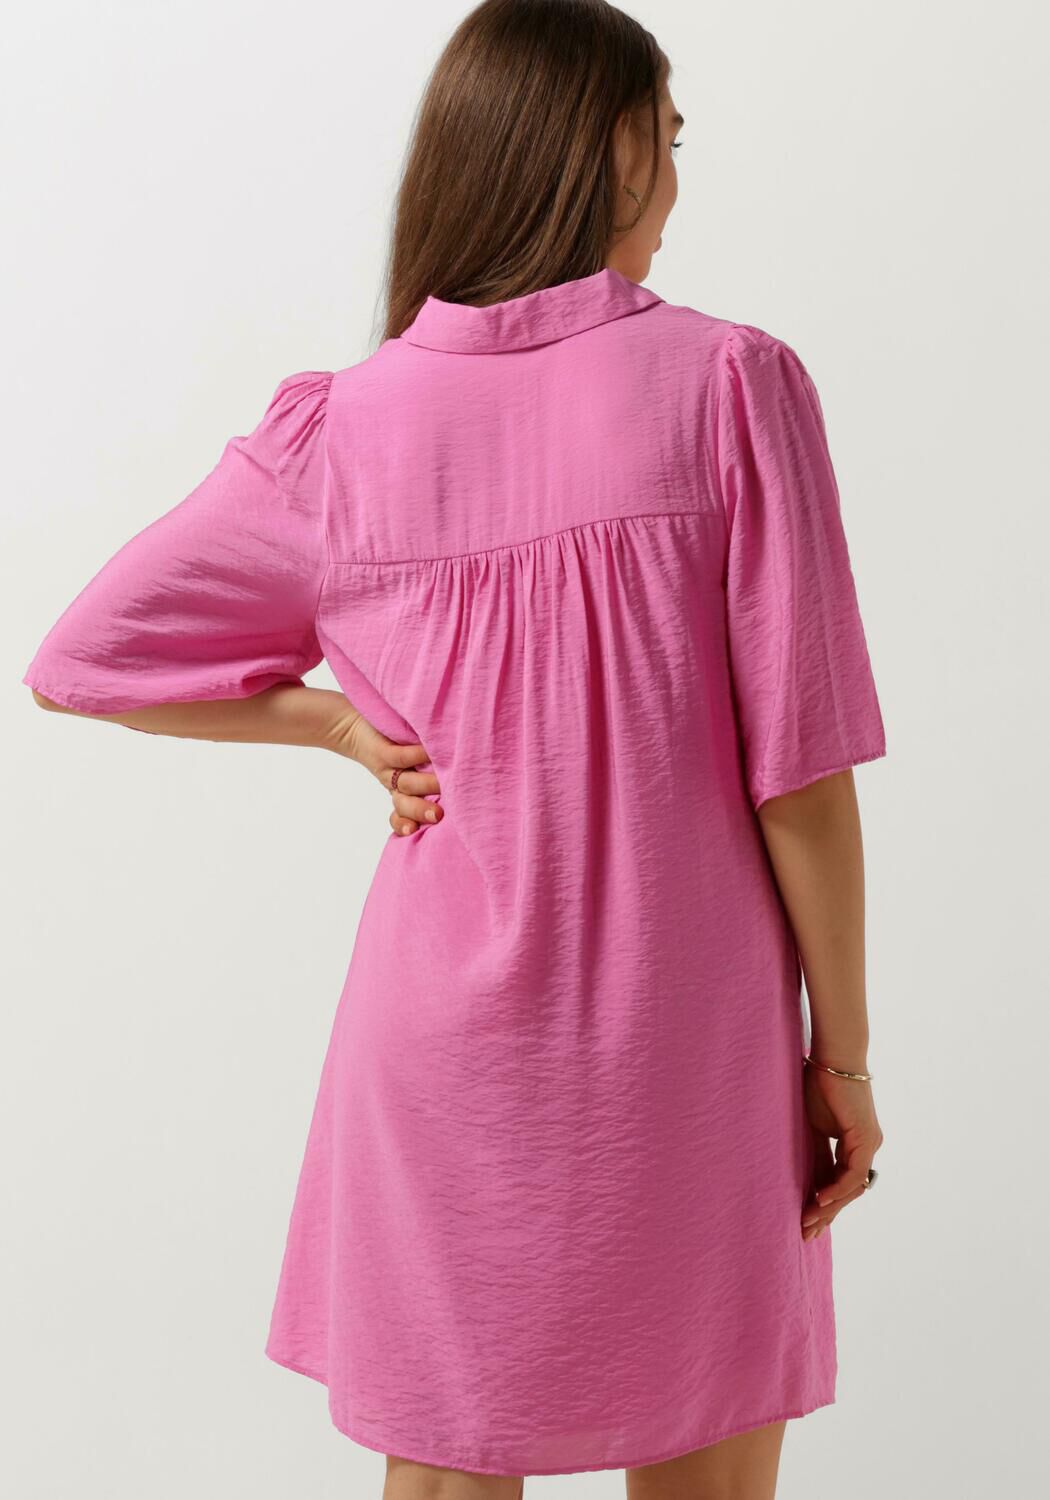 CATWALK JUNKIE Dames Jurken Flare Sleeve Button Up Blouse Dress Roze